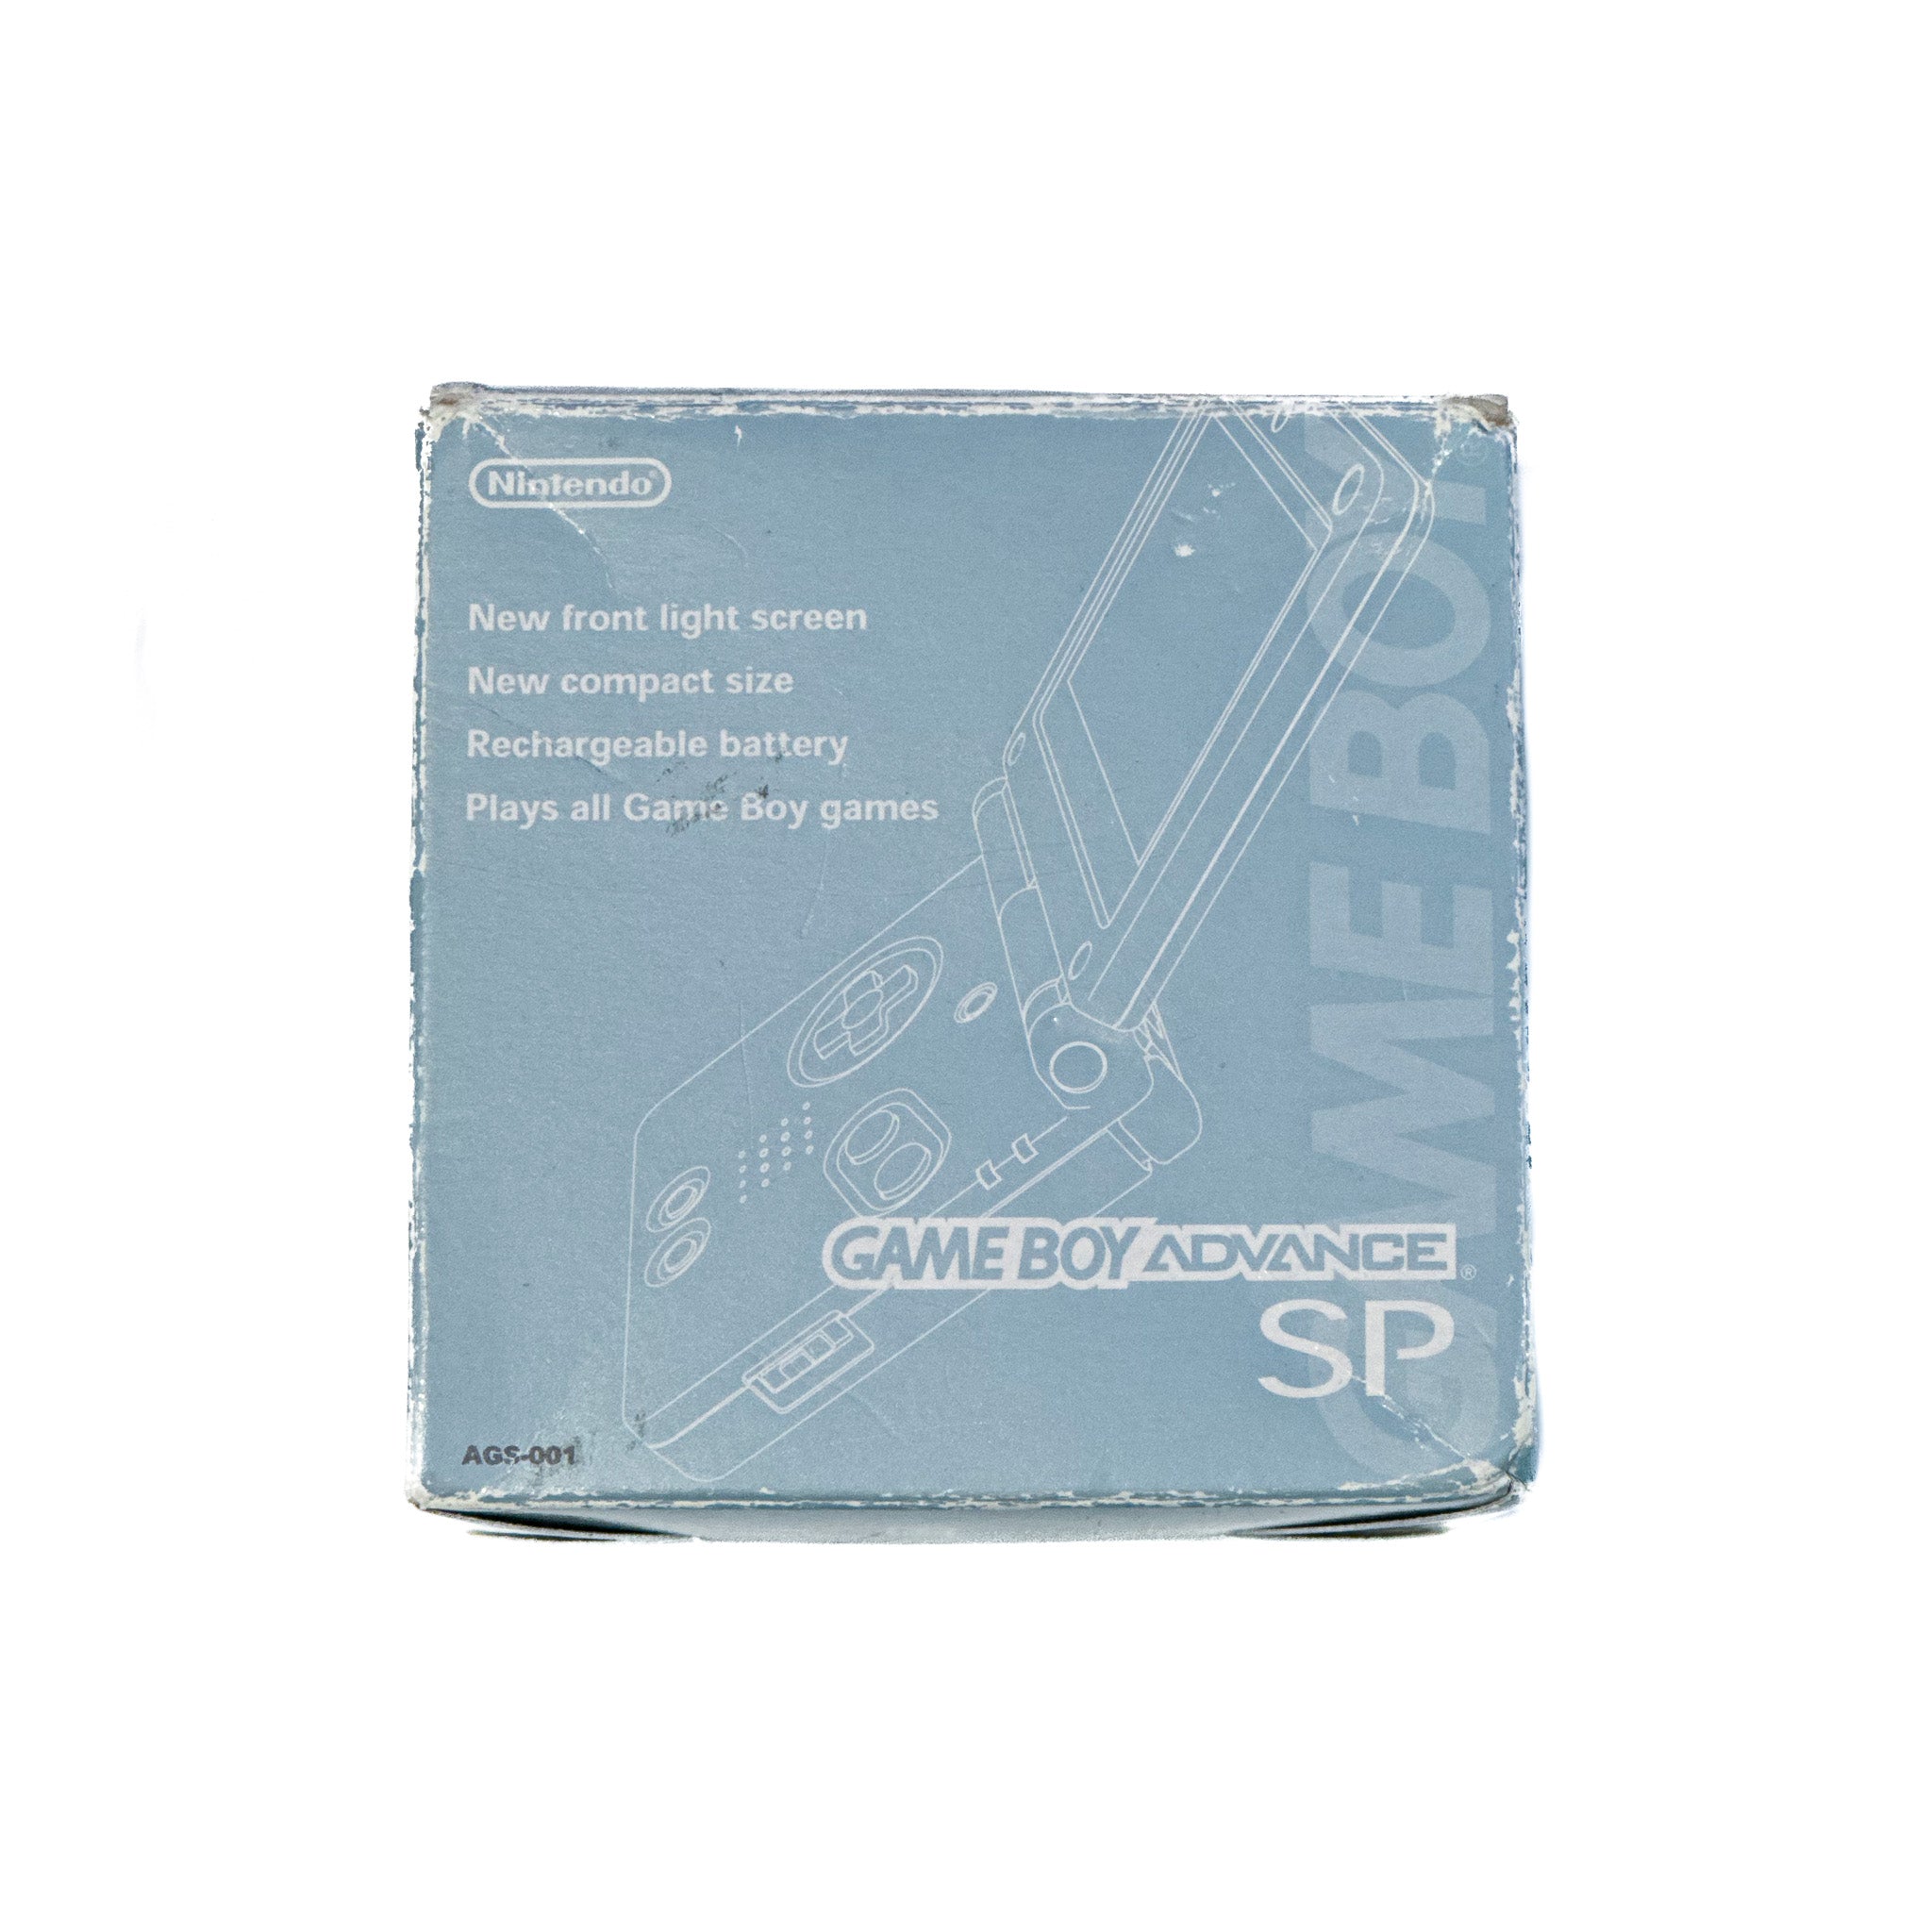 Game Boy Advance SP Box